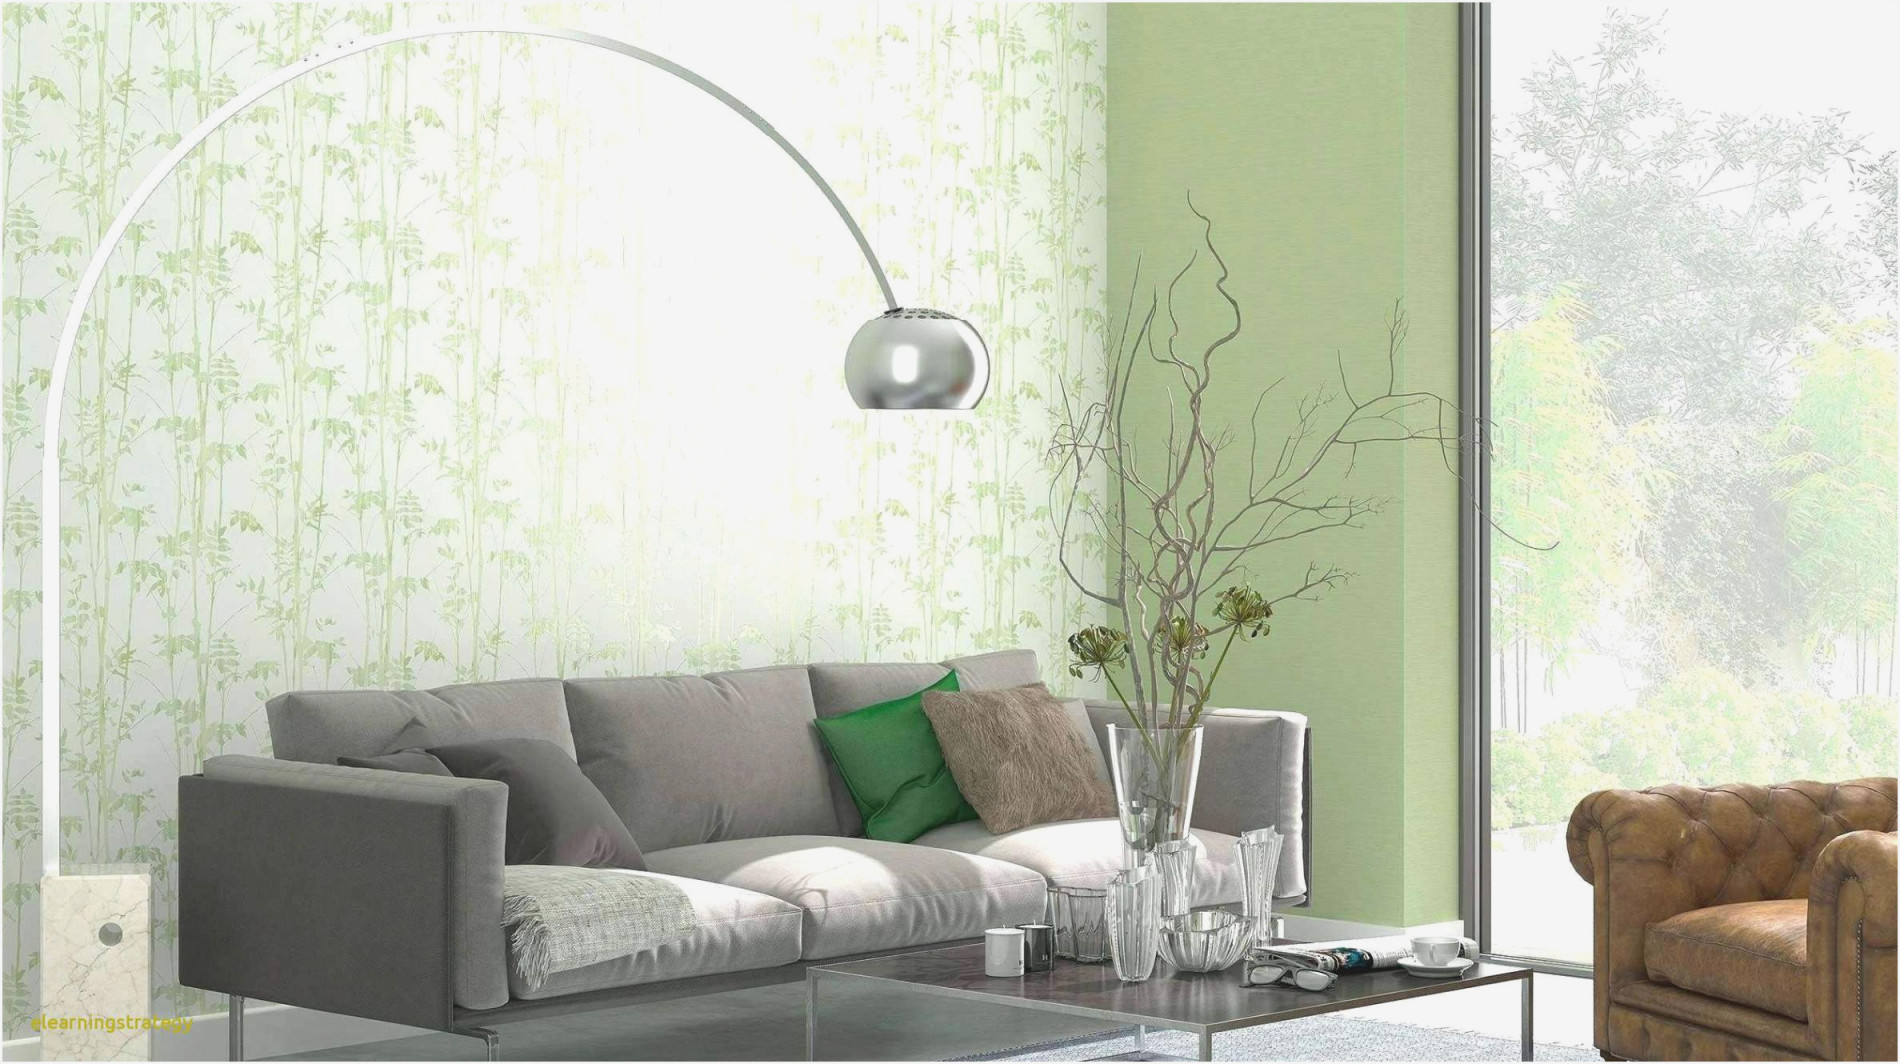 Ideen Für Wohnzimmer Tapezieren  Wohnzimmer  Traumhaus von Wohnzimmer Neu Tapezieren Ideen Bild